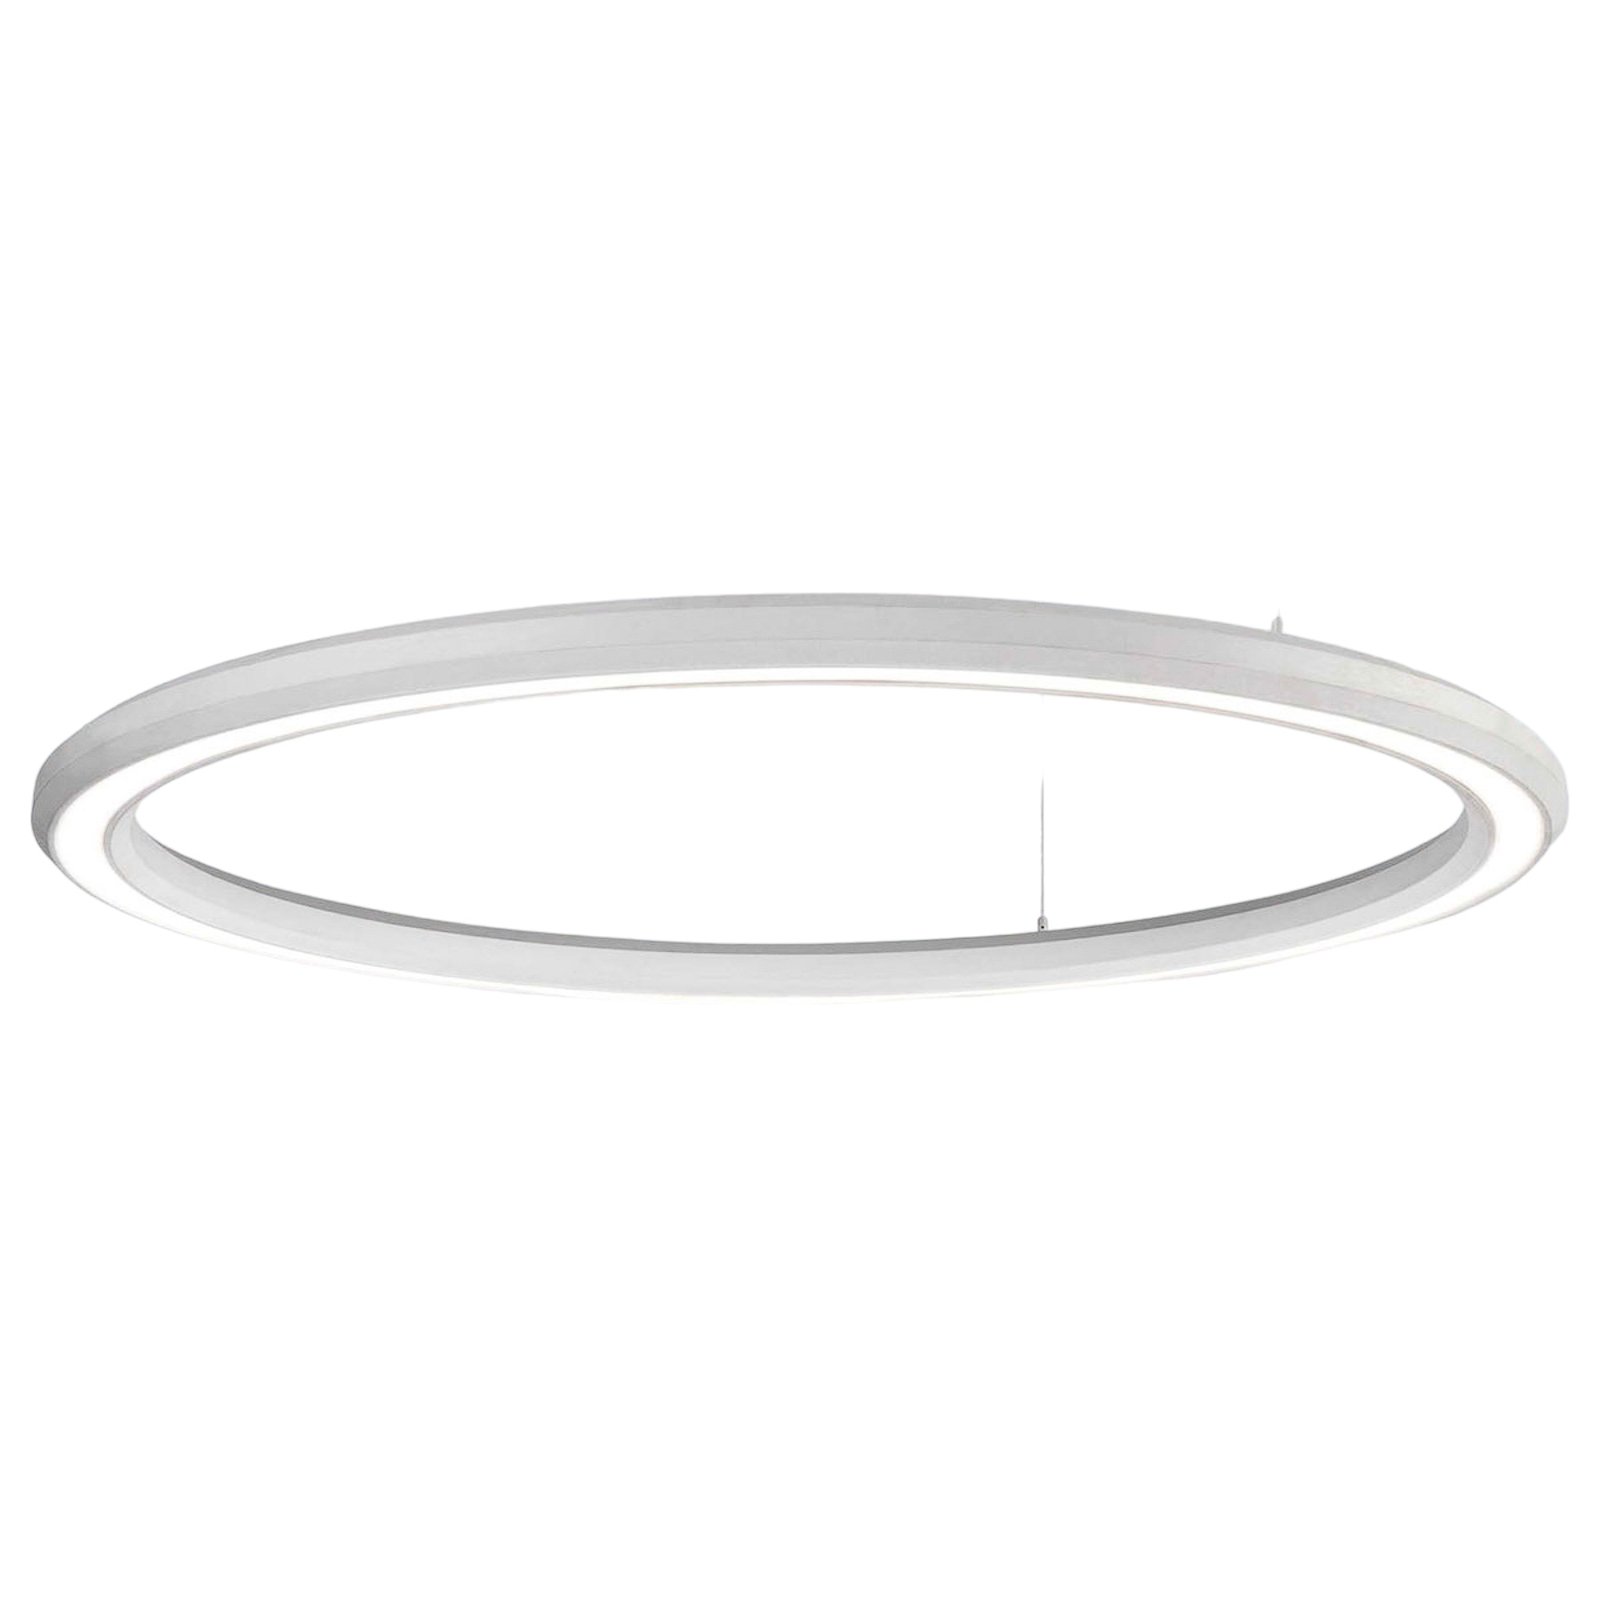 LED-pendel Materica bund Ø 120 cm hvid